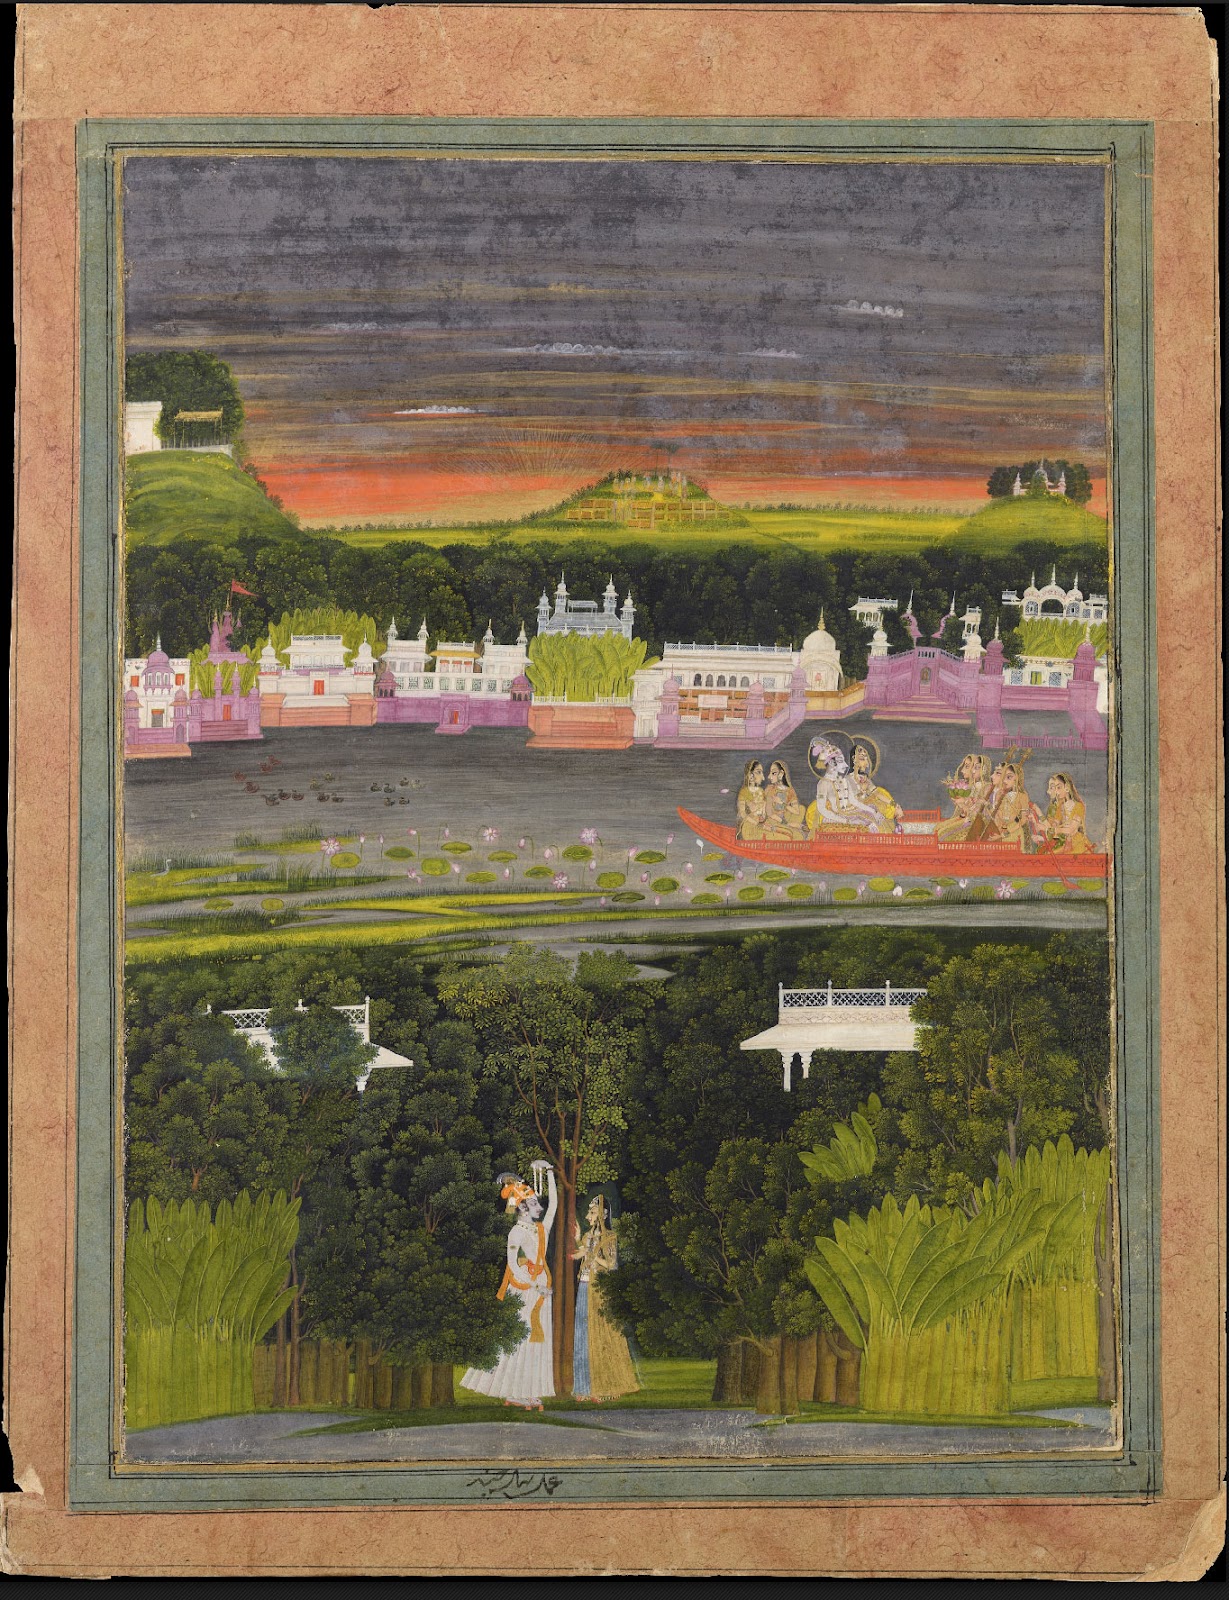 Radha e Krishna nella barca di amore by Nihal Chand - 1750 - 43 x 34 cm 